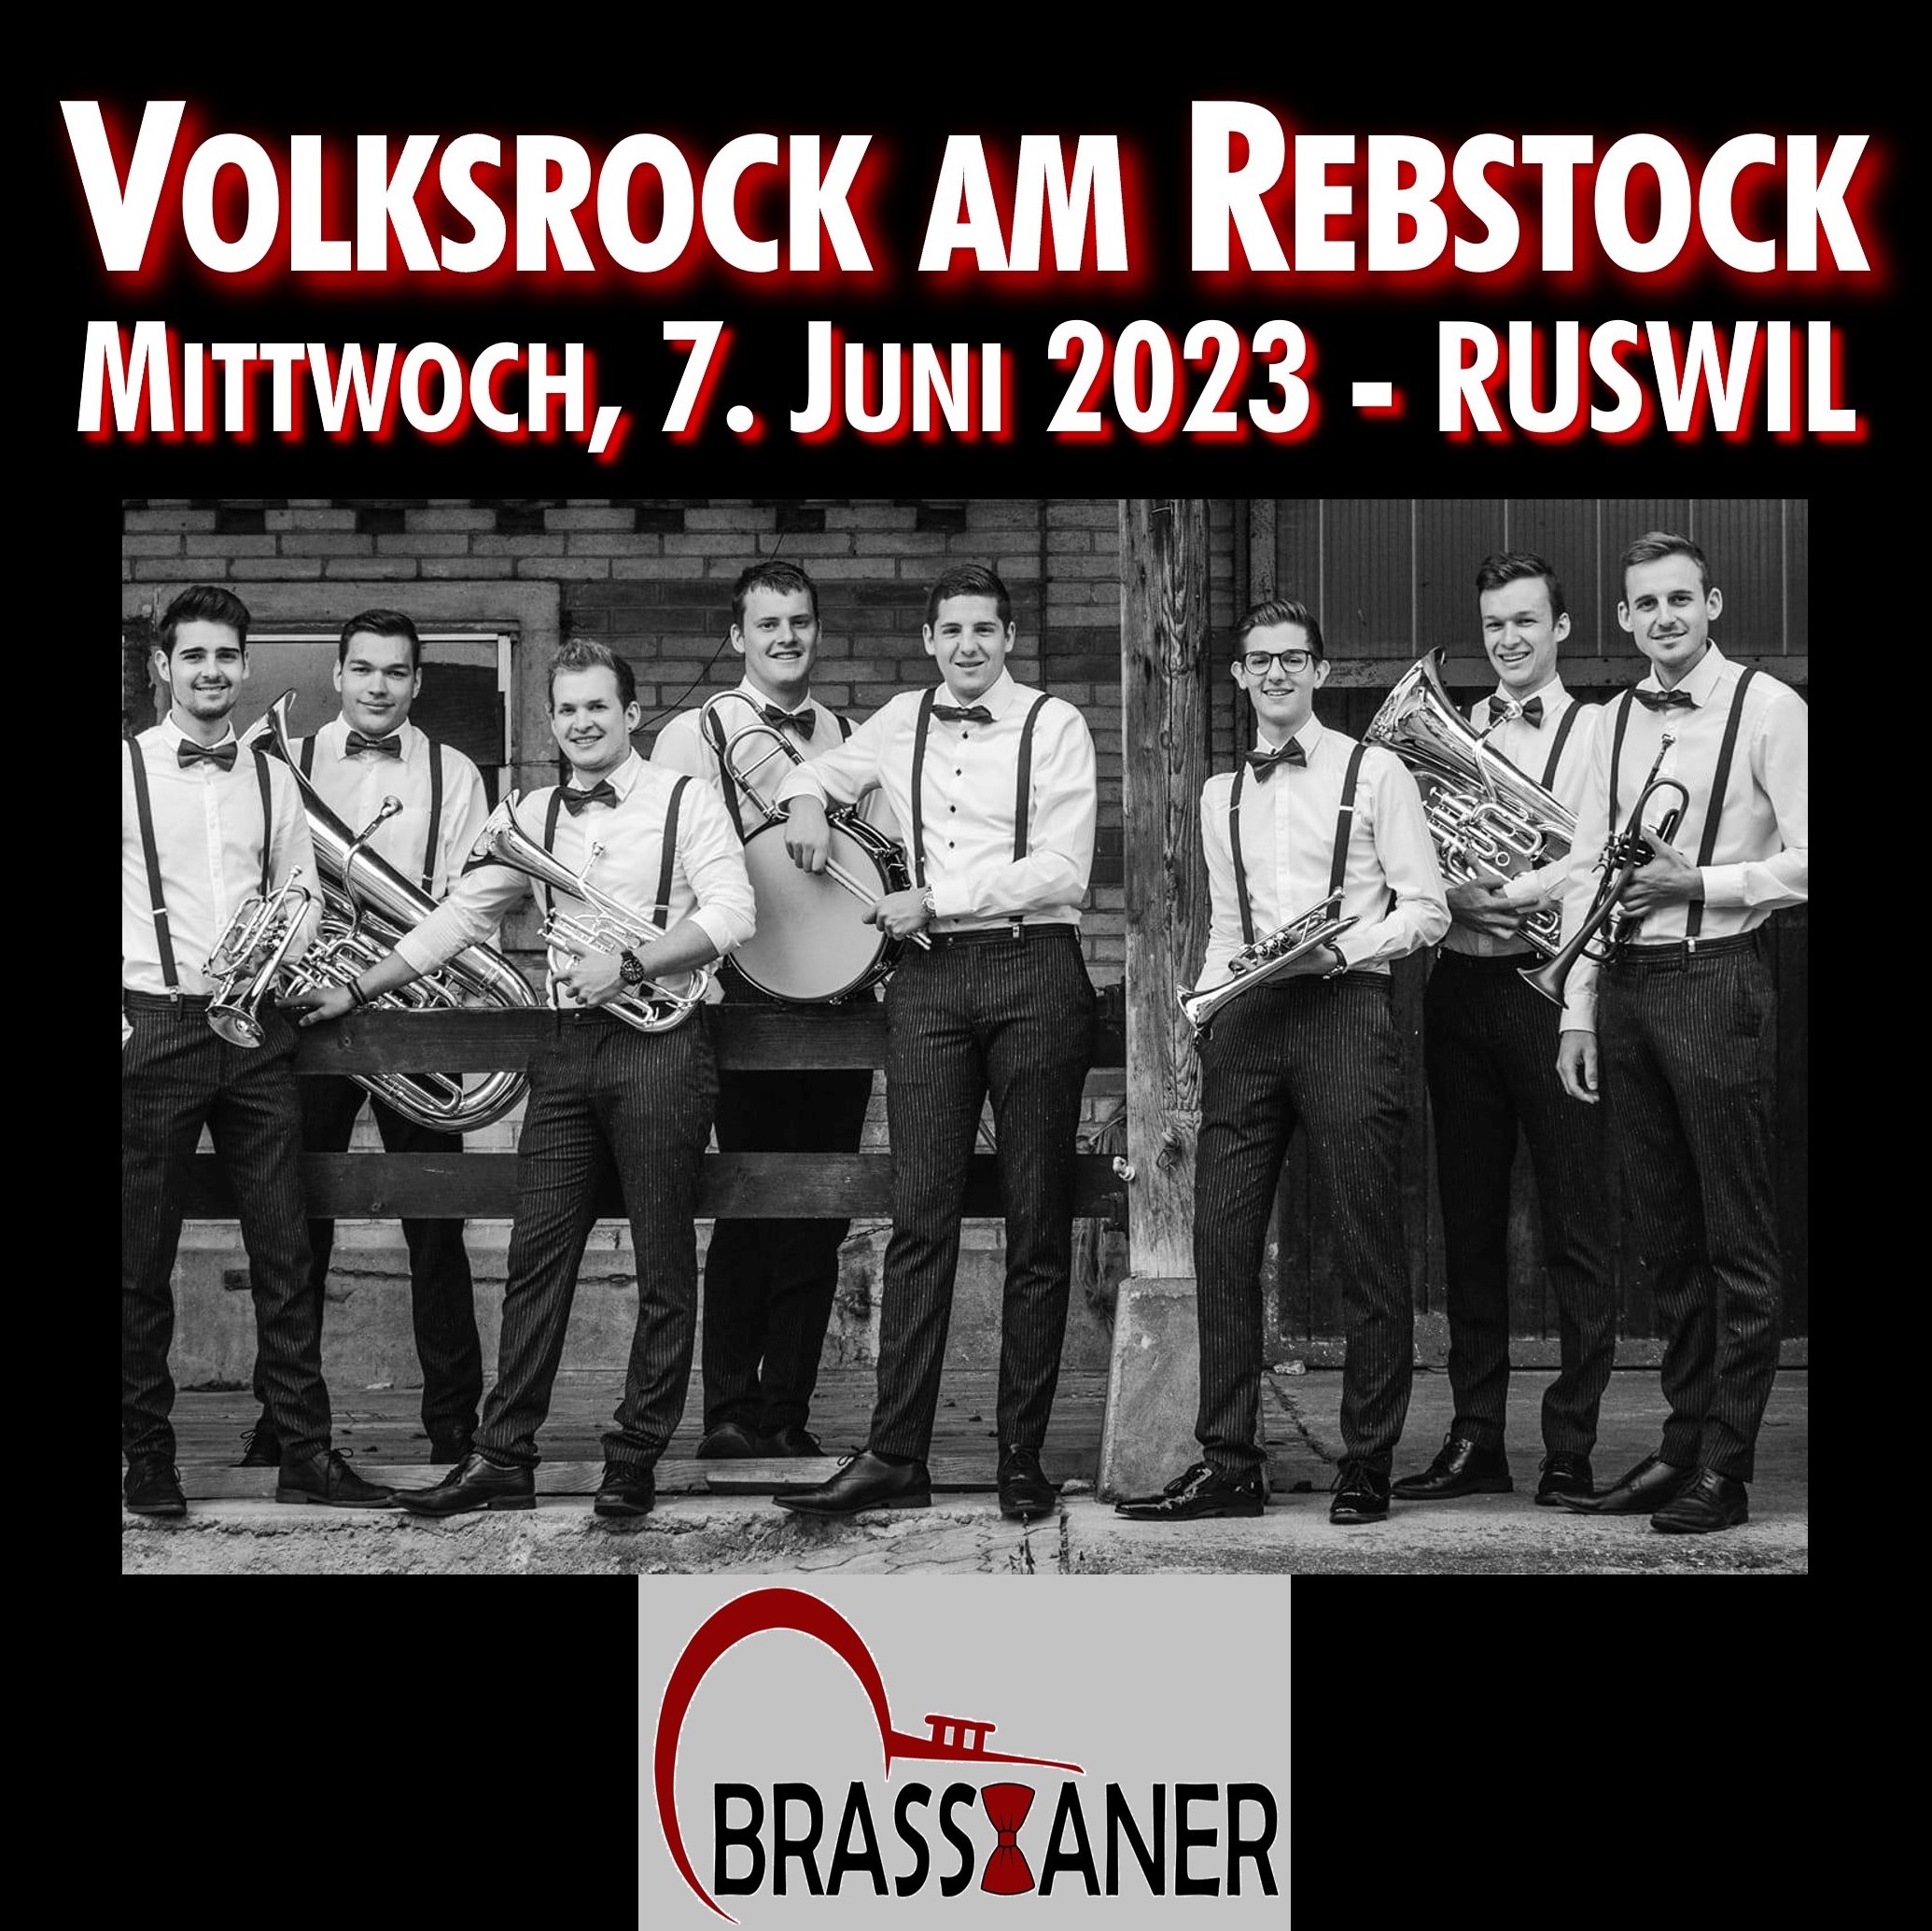 Brassianer aus dem Michelsamt treten am Volksrock am Rebstock in Ruswil auf